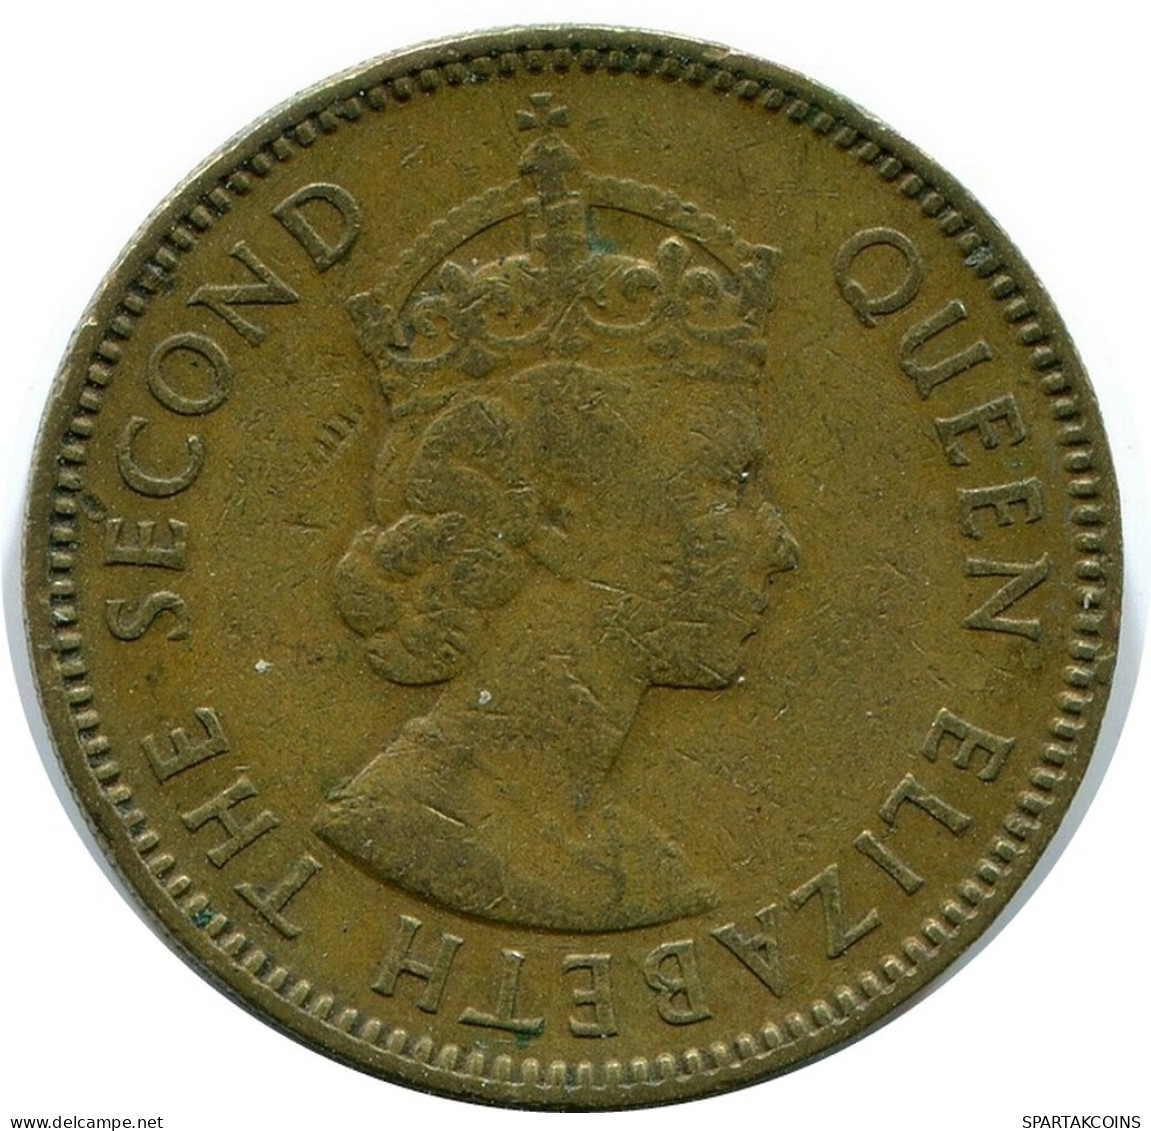 10 CENTS 1957 HONG KONG Coin #BA162.U.A - Hongkong